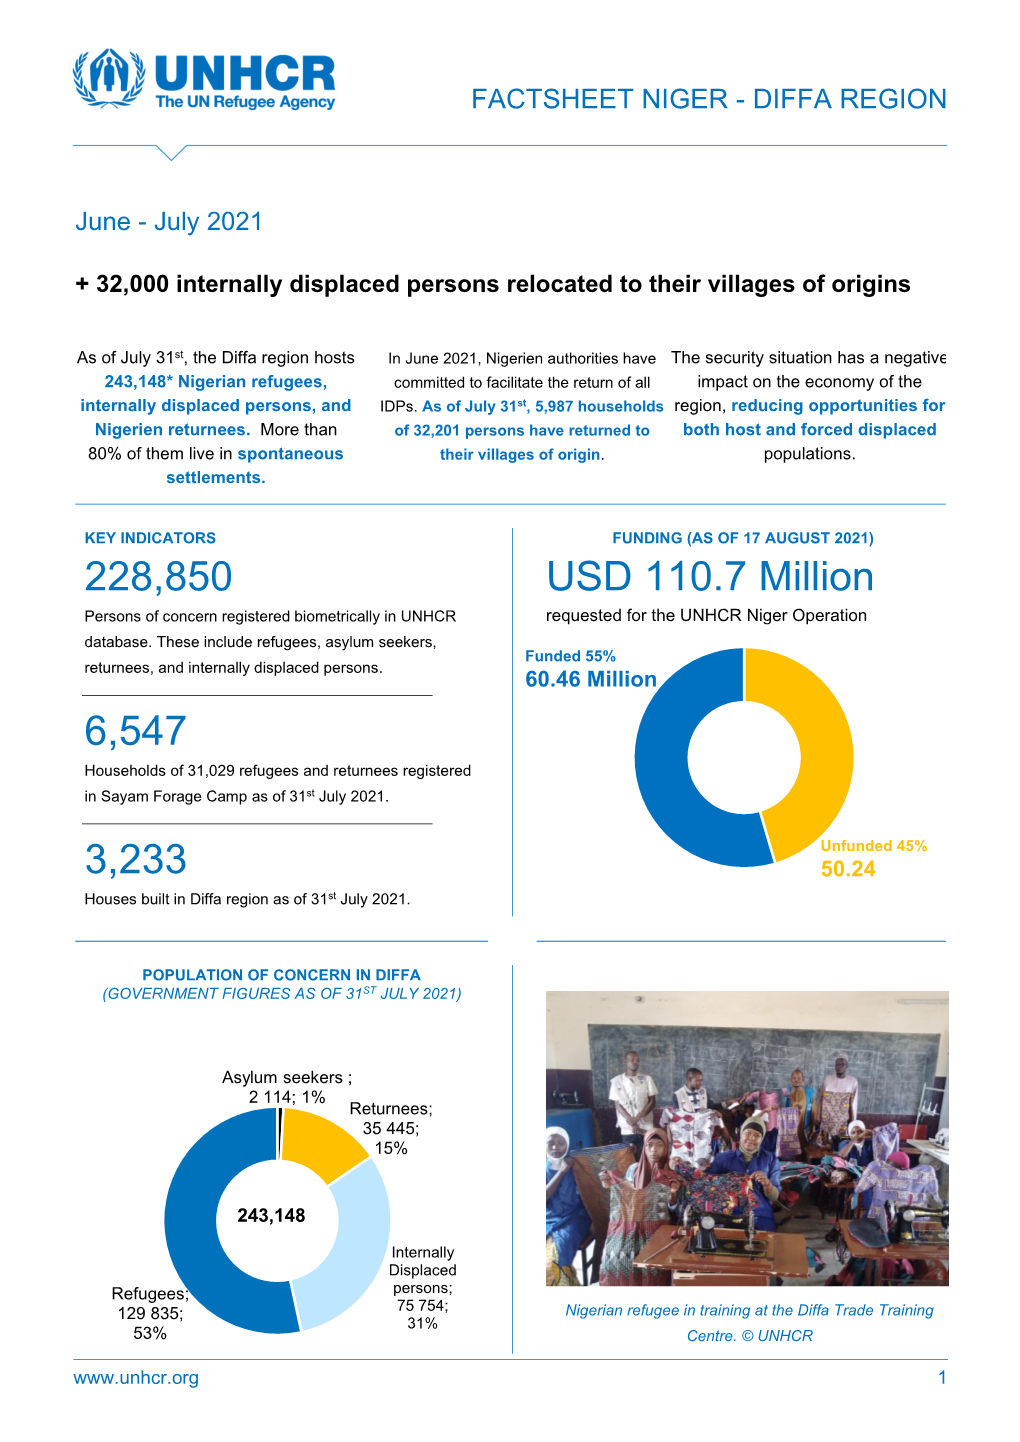 UNHCR Niger: Diffa Region Update